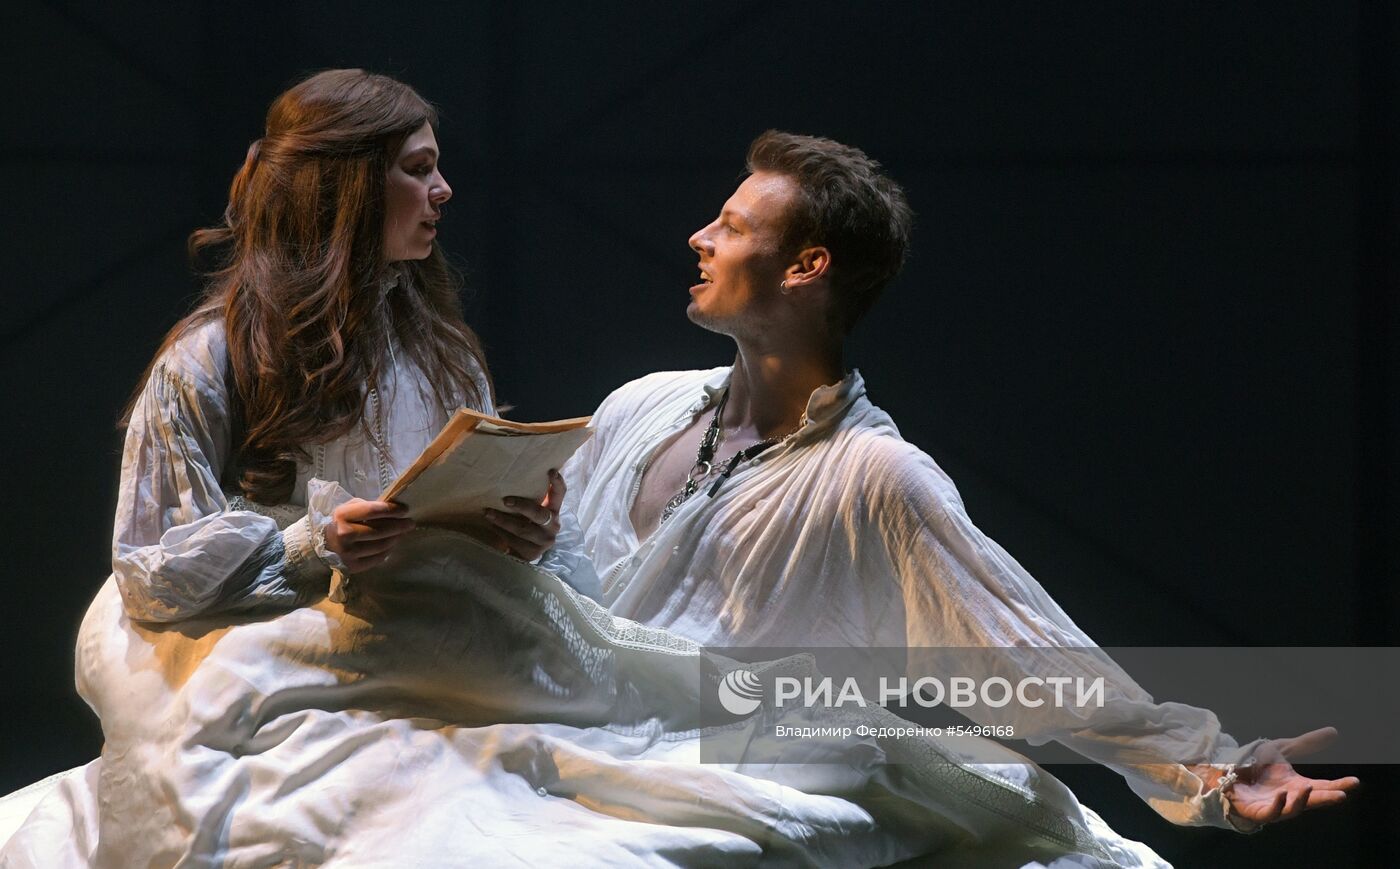 Показ спектакля "Влюбленный Шекспир" в Театре имени Пушкина